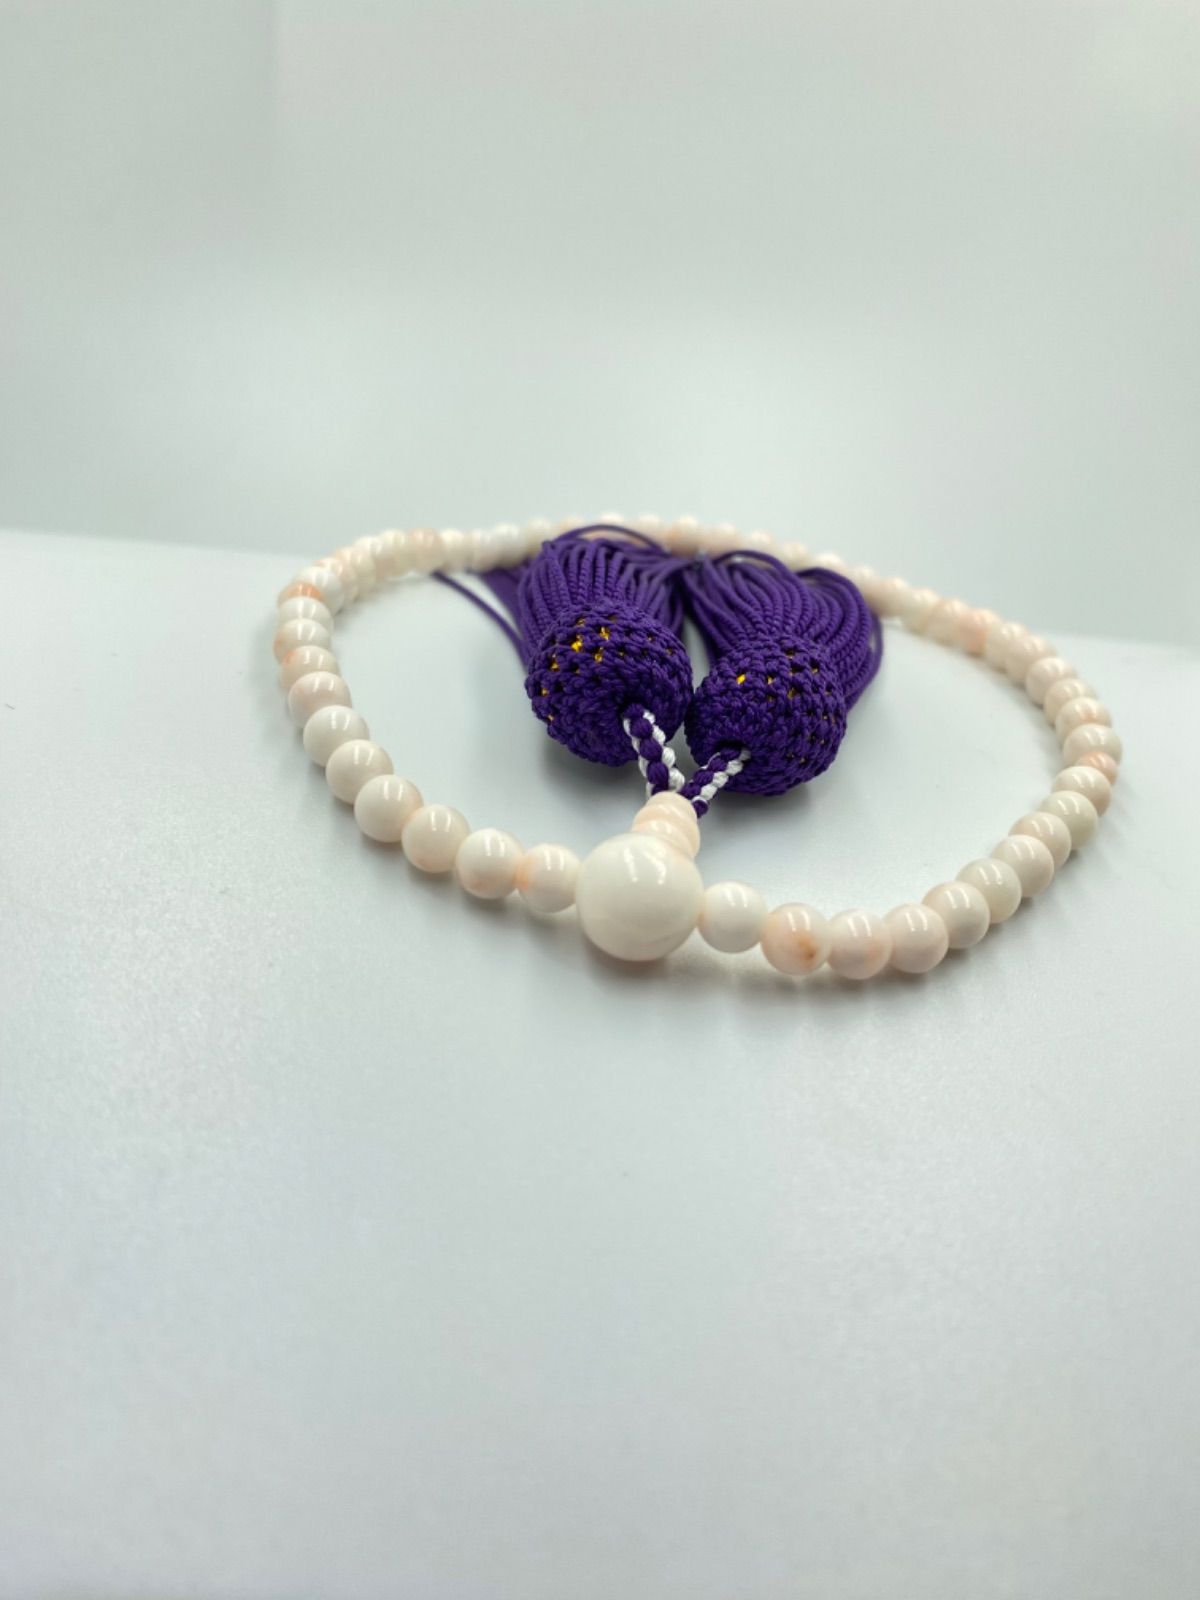 珊瑚の片手念珠 数珠 略式 正絹 ミッド珊瑚 白 宝石珊瑚 無染色 - さん